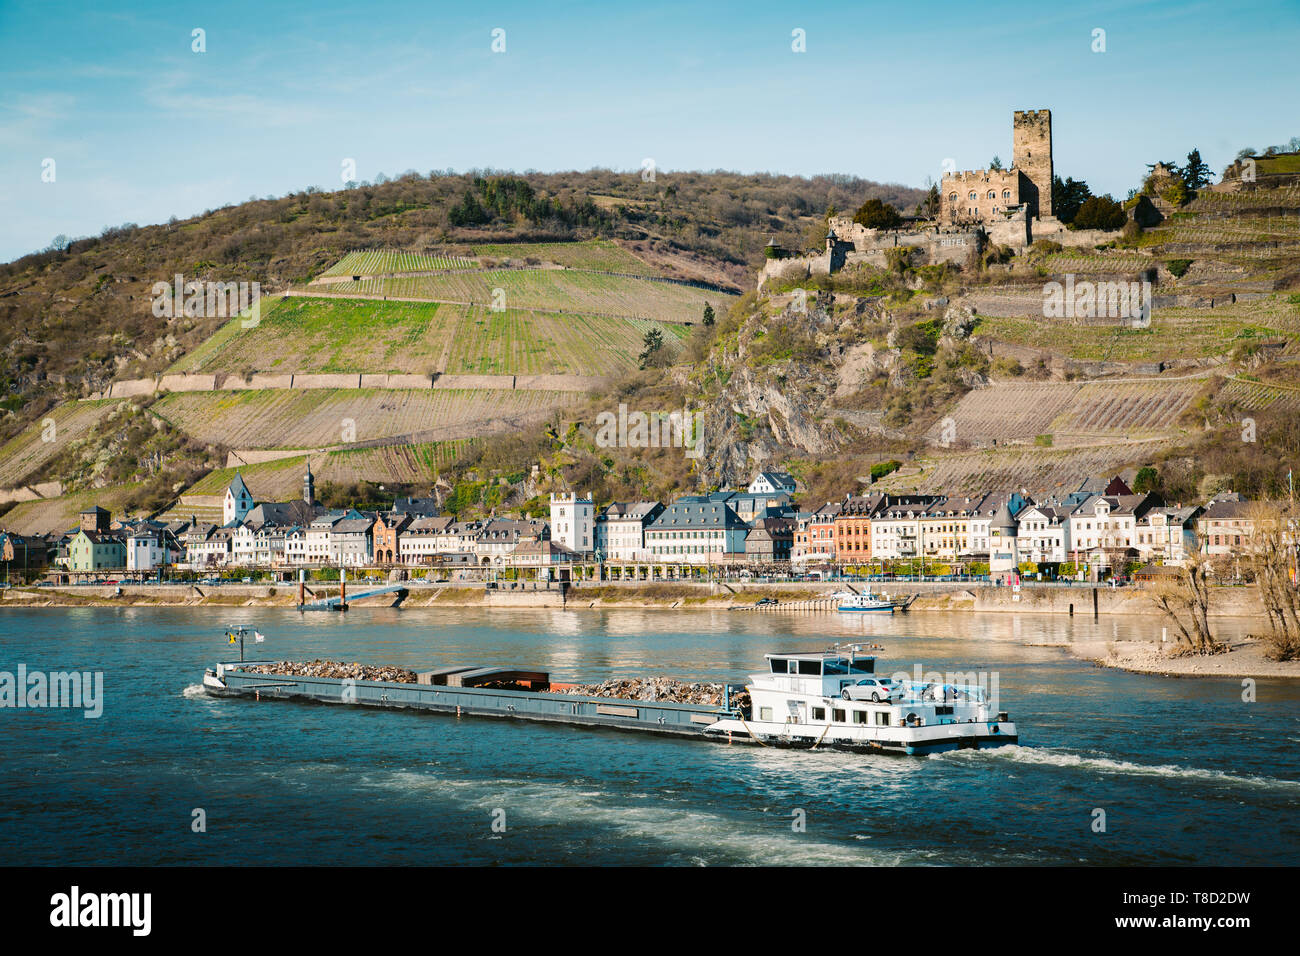 Hermosa vista de la ciudad histórica de Kaub Burg Pfalzgrafenstein con famosos a lo largo del río Rin en un pintoresco día soleado con el cielo azul en primavera, Rheinla Foto de stock